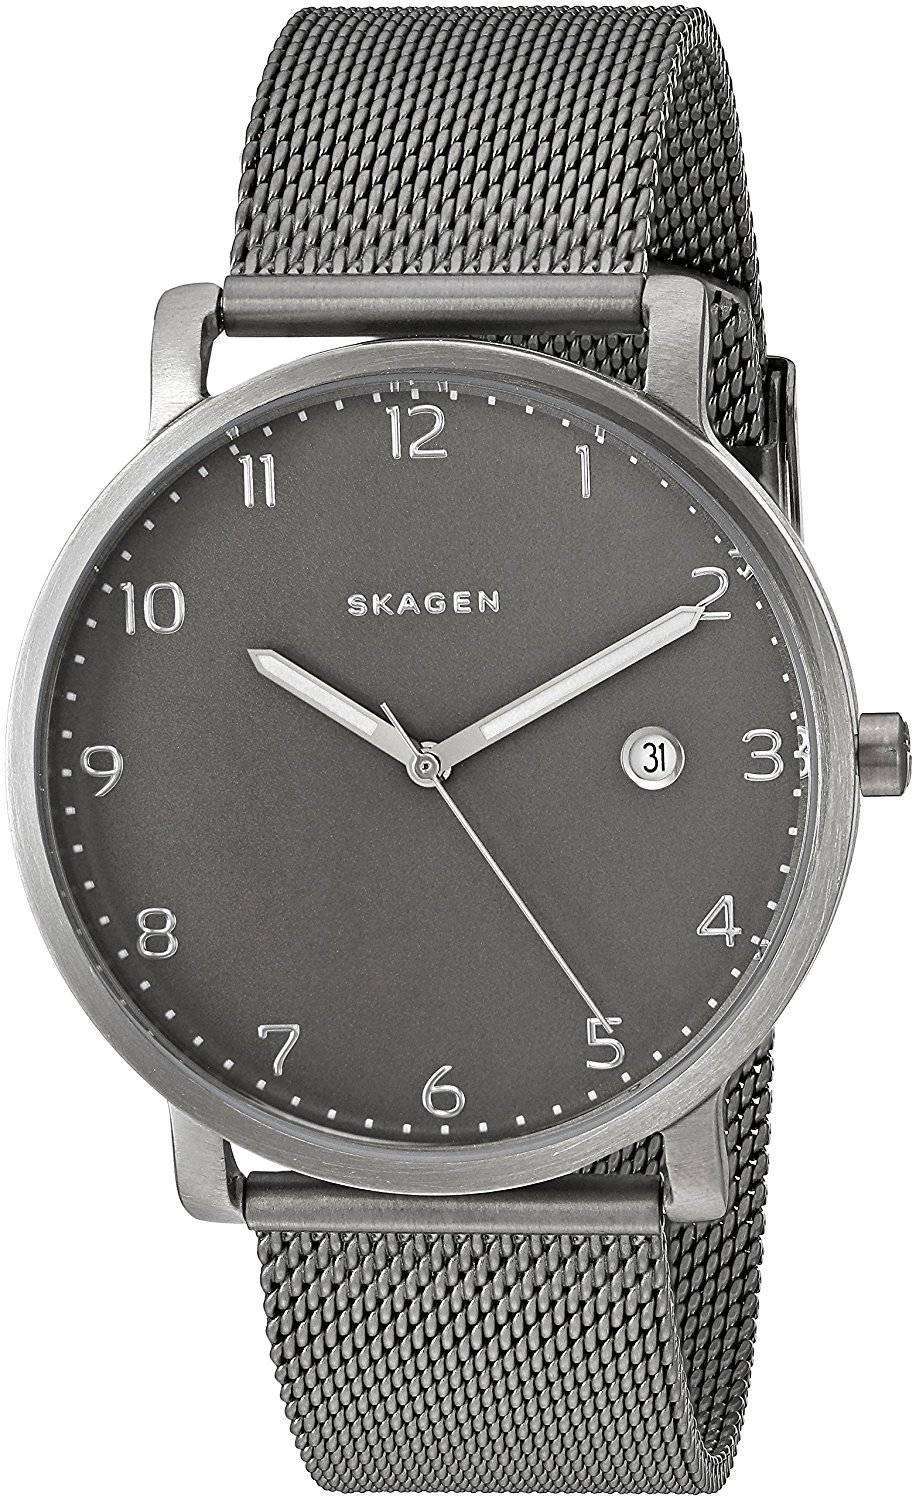 お買得品 SKAGEN スカーゲン HAGEN ハーゲン 腕時計 メンズ